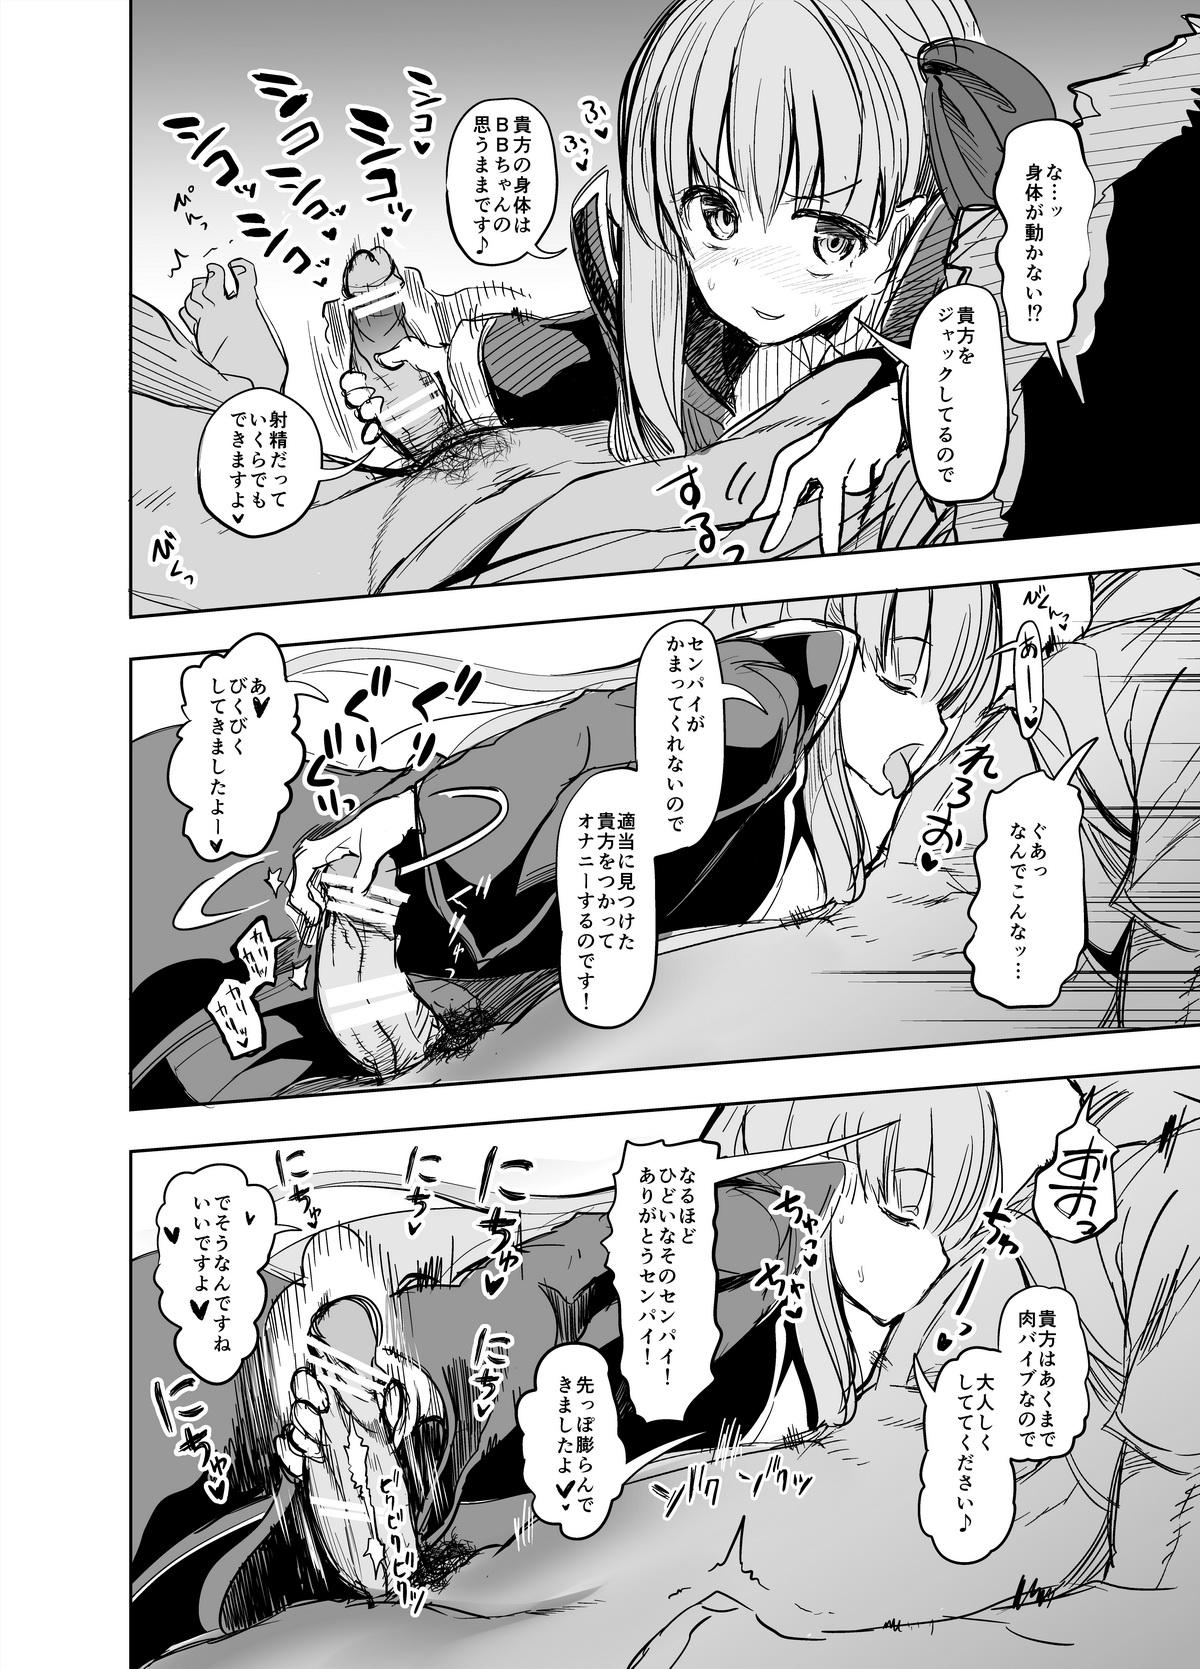 Ass Licking Kyou kara Anata ga Nama Vibe desu yo - Fate grand order Fate extra Sucking Dick - Page 5